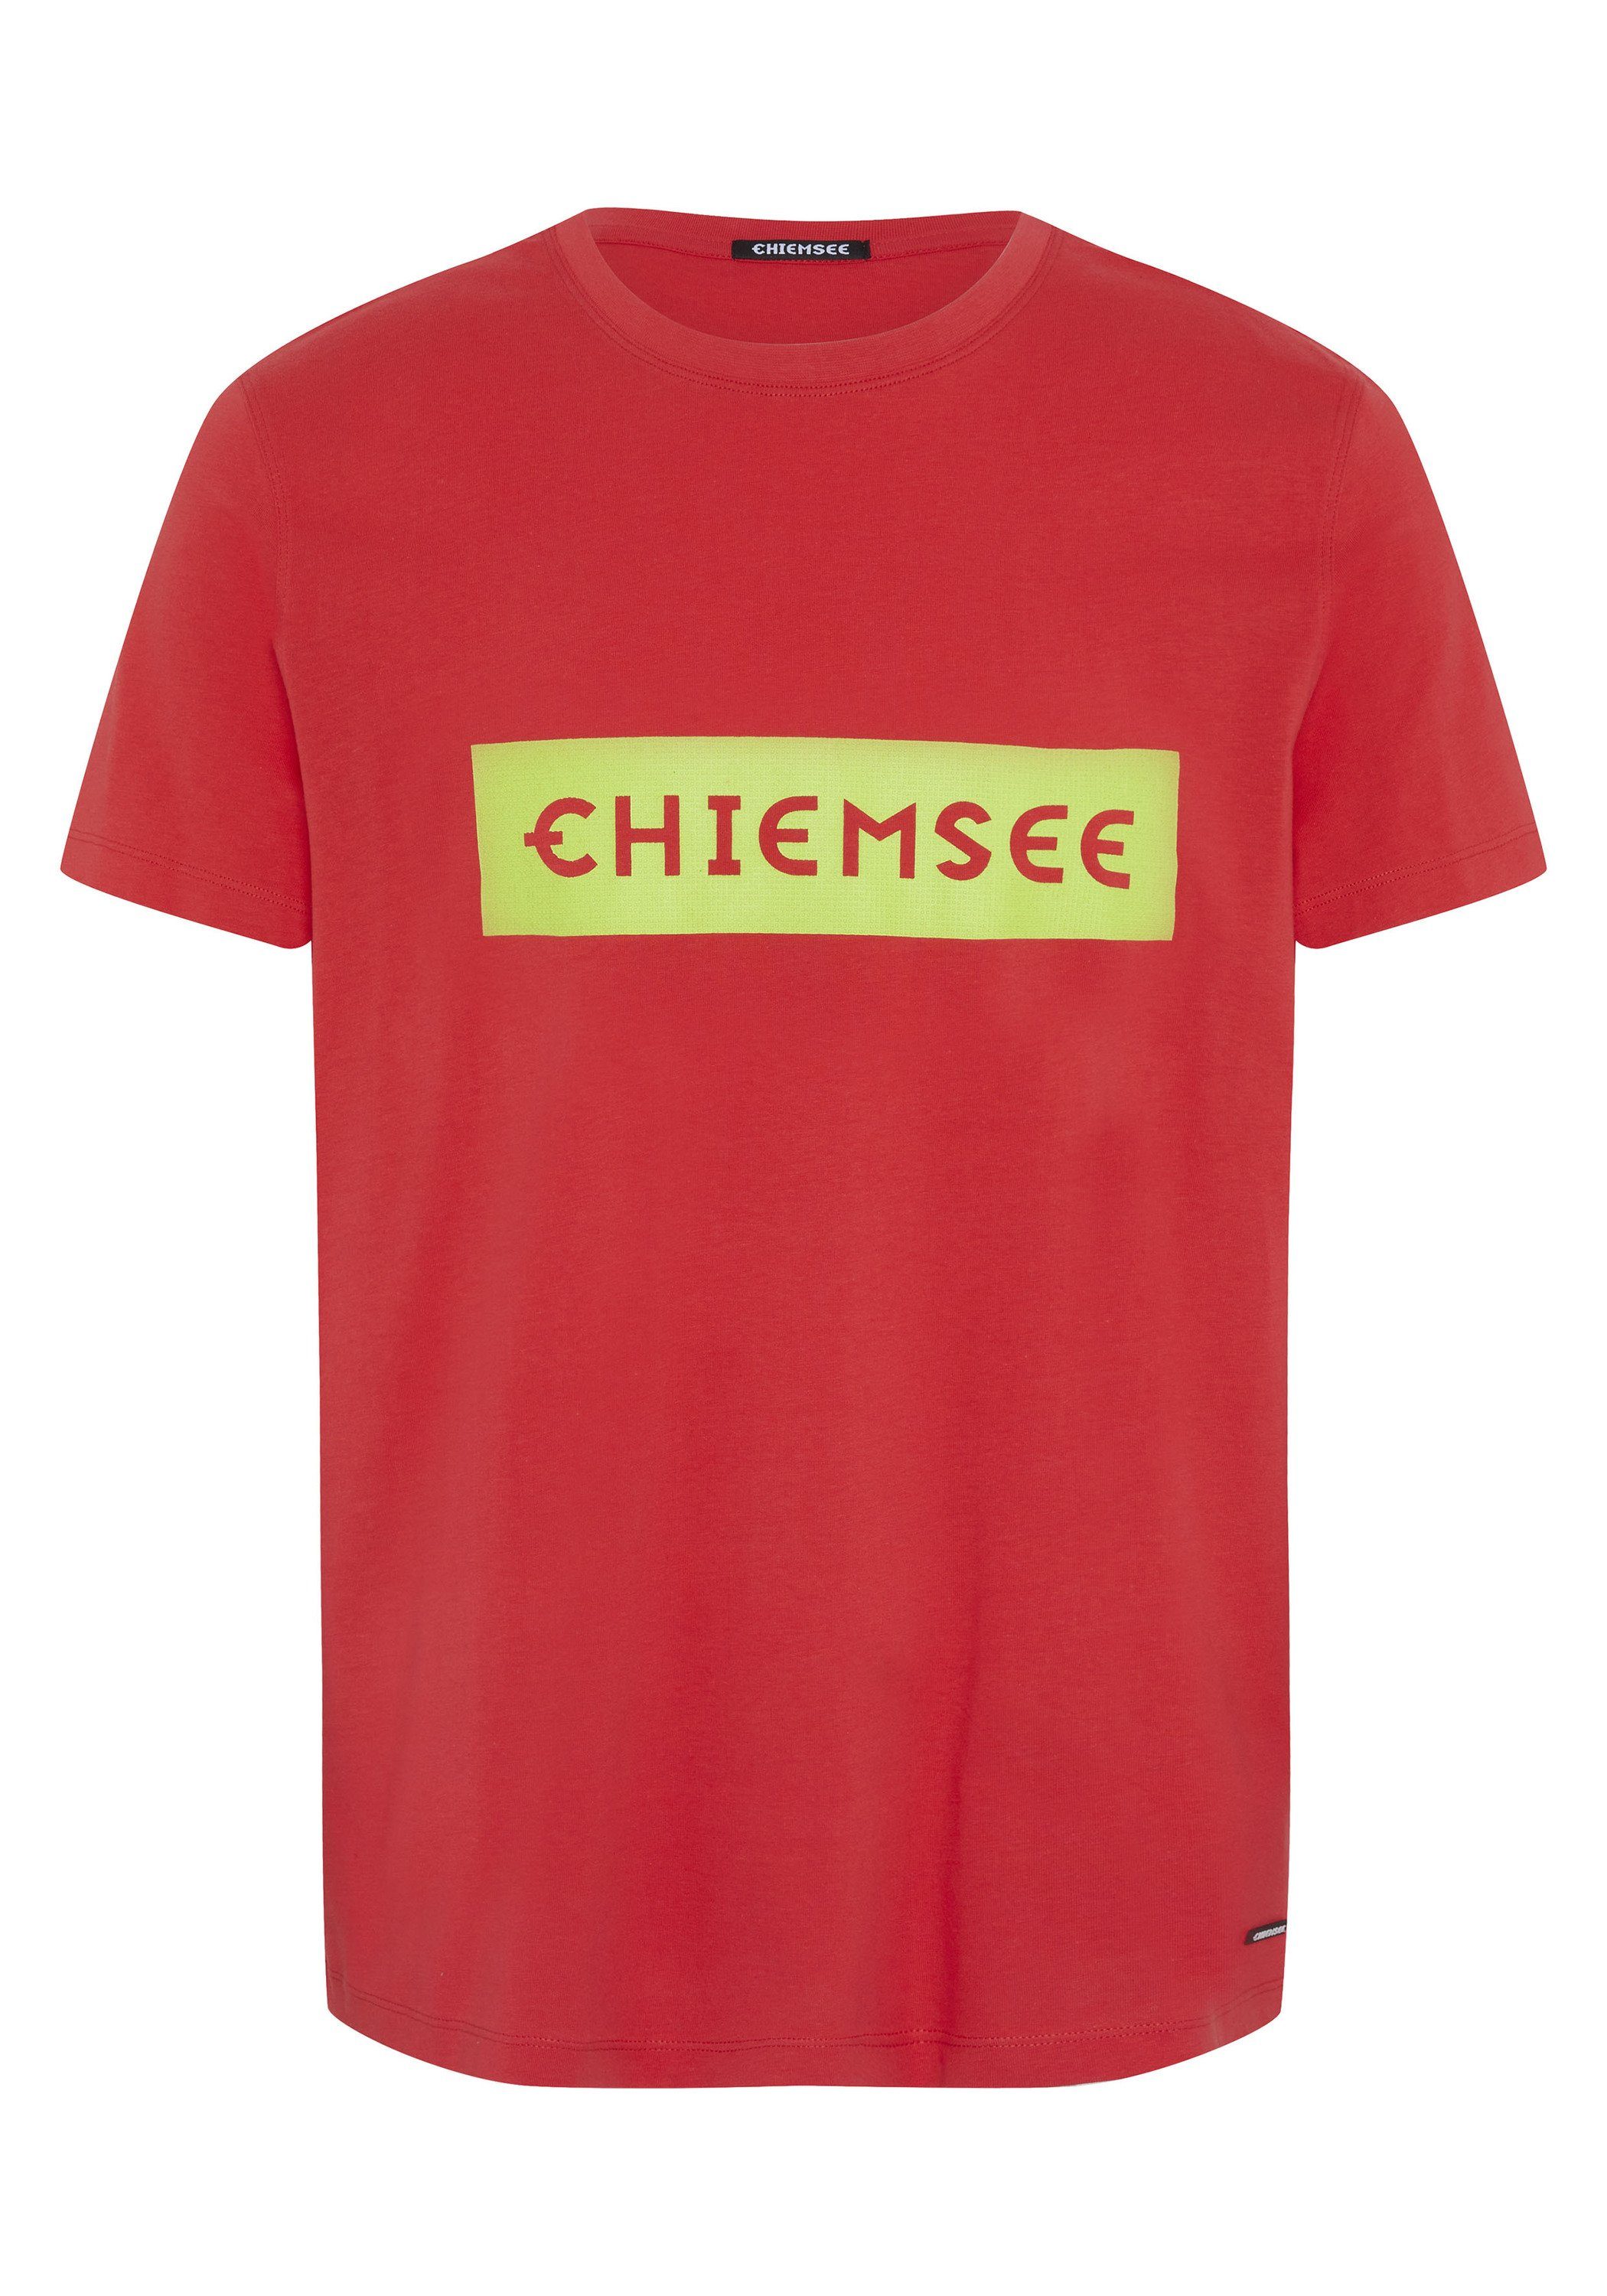 Chiemsee Print-Shirt T-Shirt mit plakativem 17-1663 1 Bittersweet Markenschriftzug